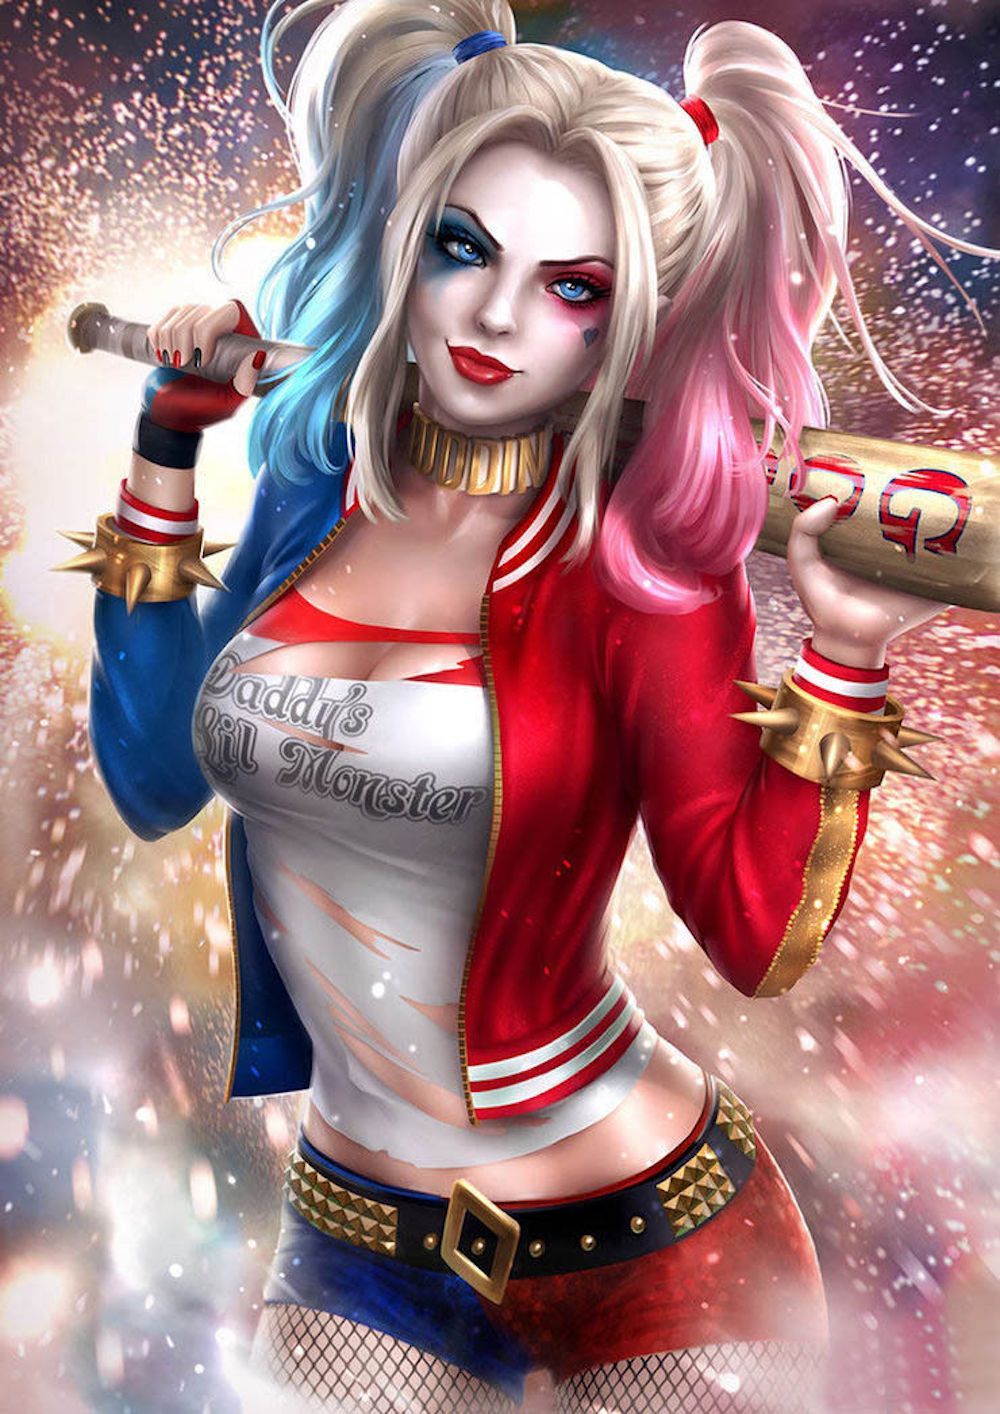 5 Super Creepy Harley Quinn Fan Art Pics (& 5 Ganap na Napakaganda)